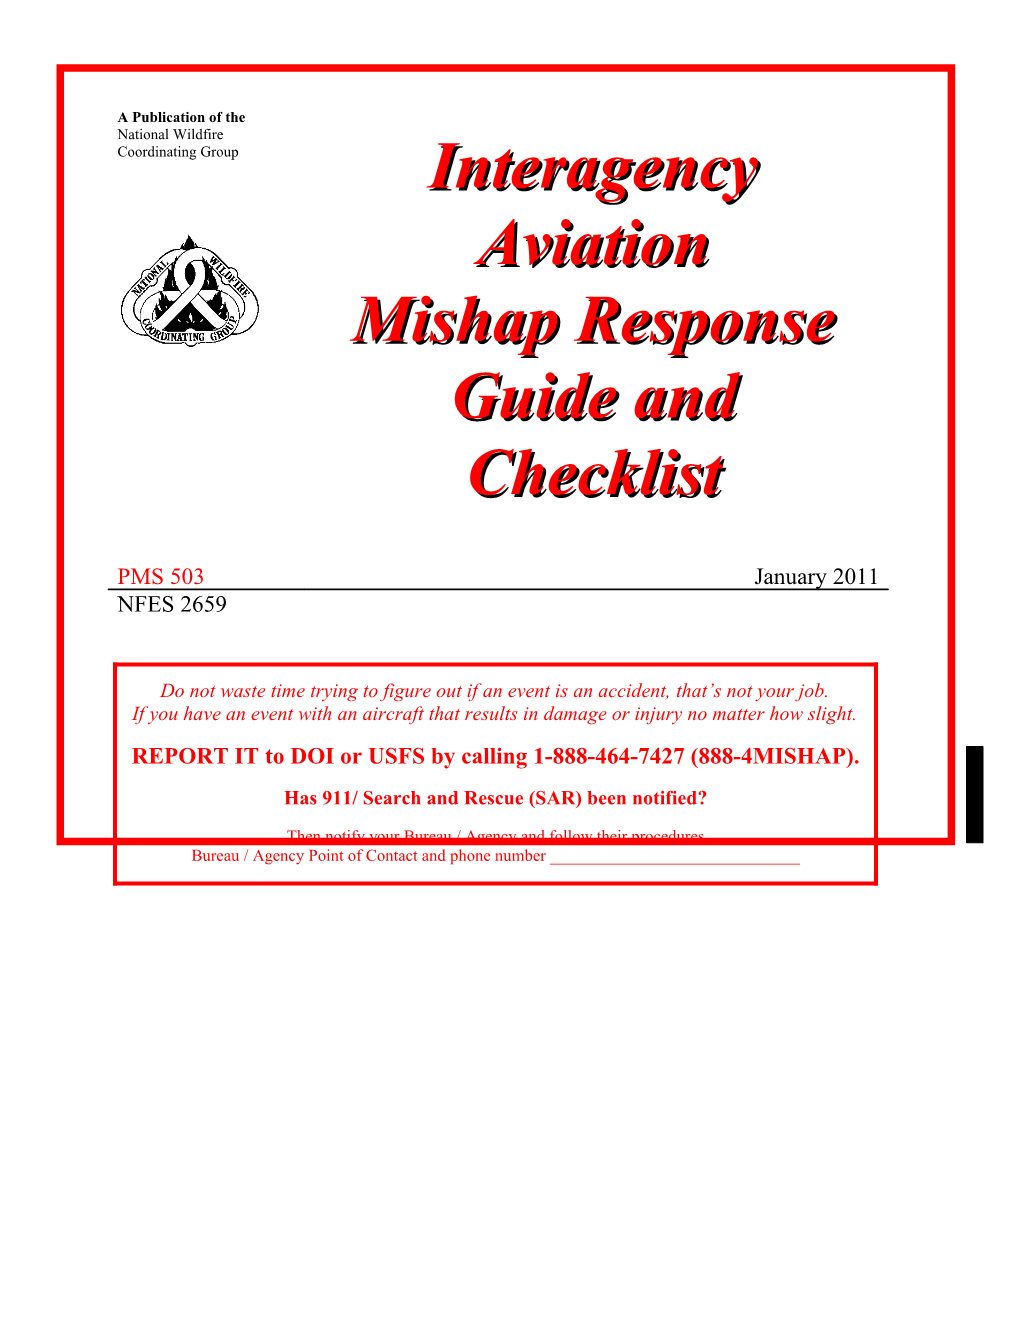 Interagency Aviation Mishap Response Plan